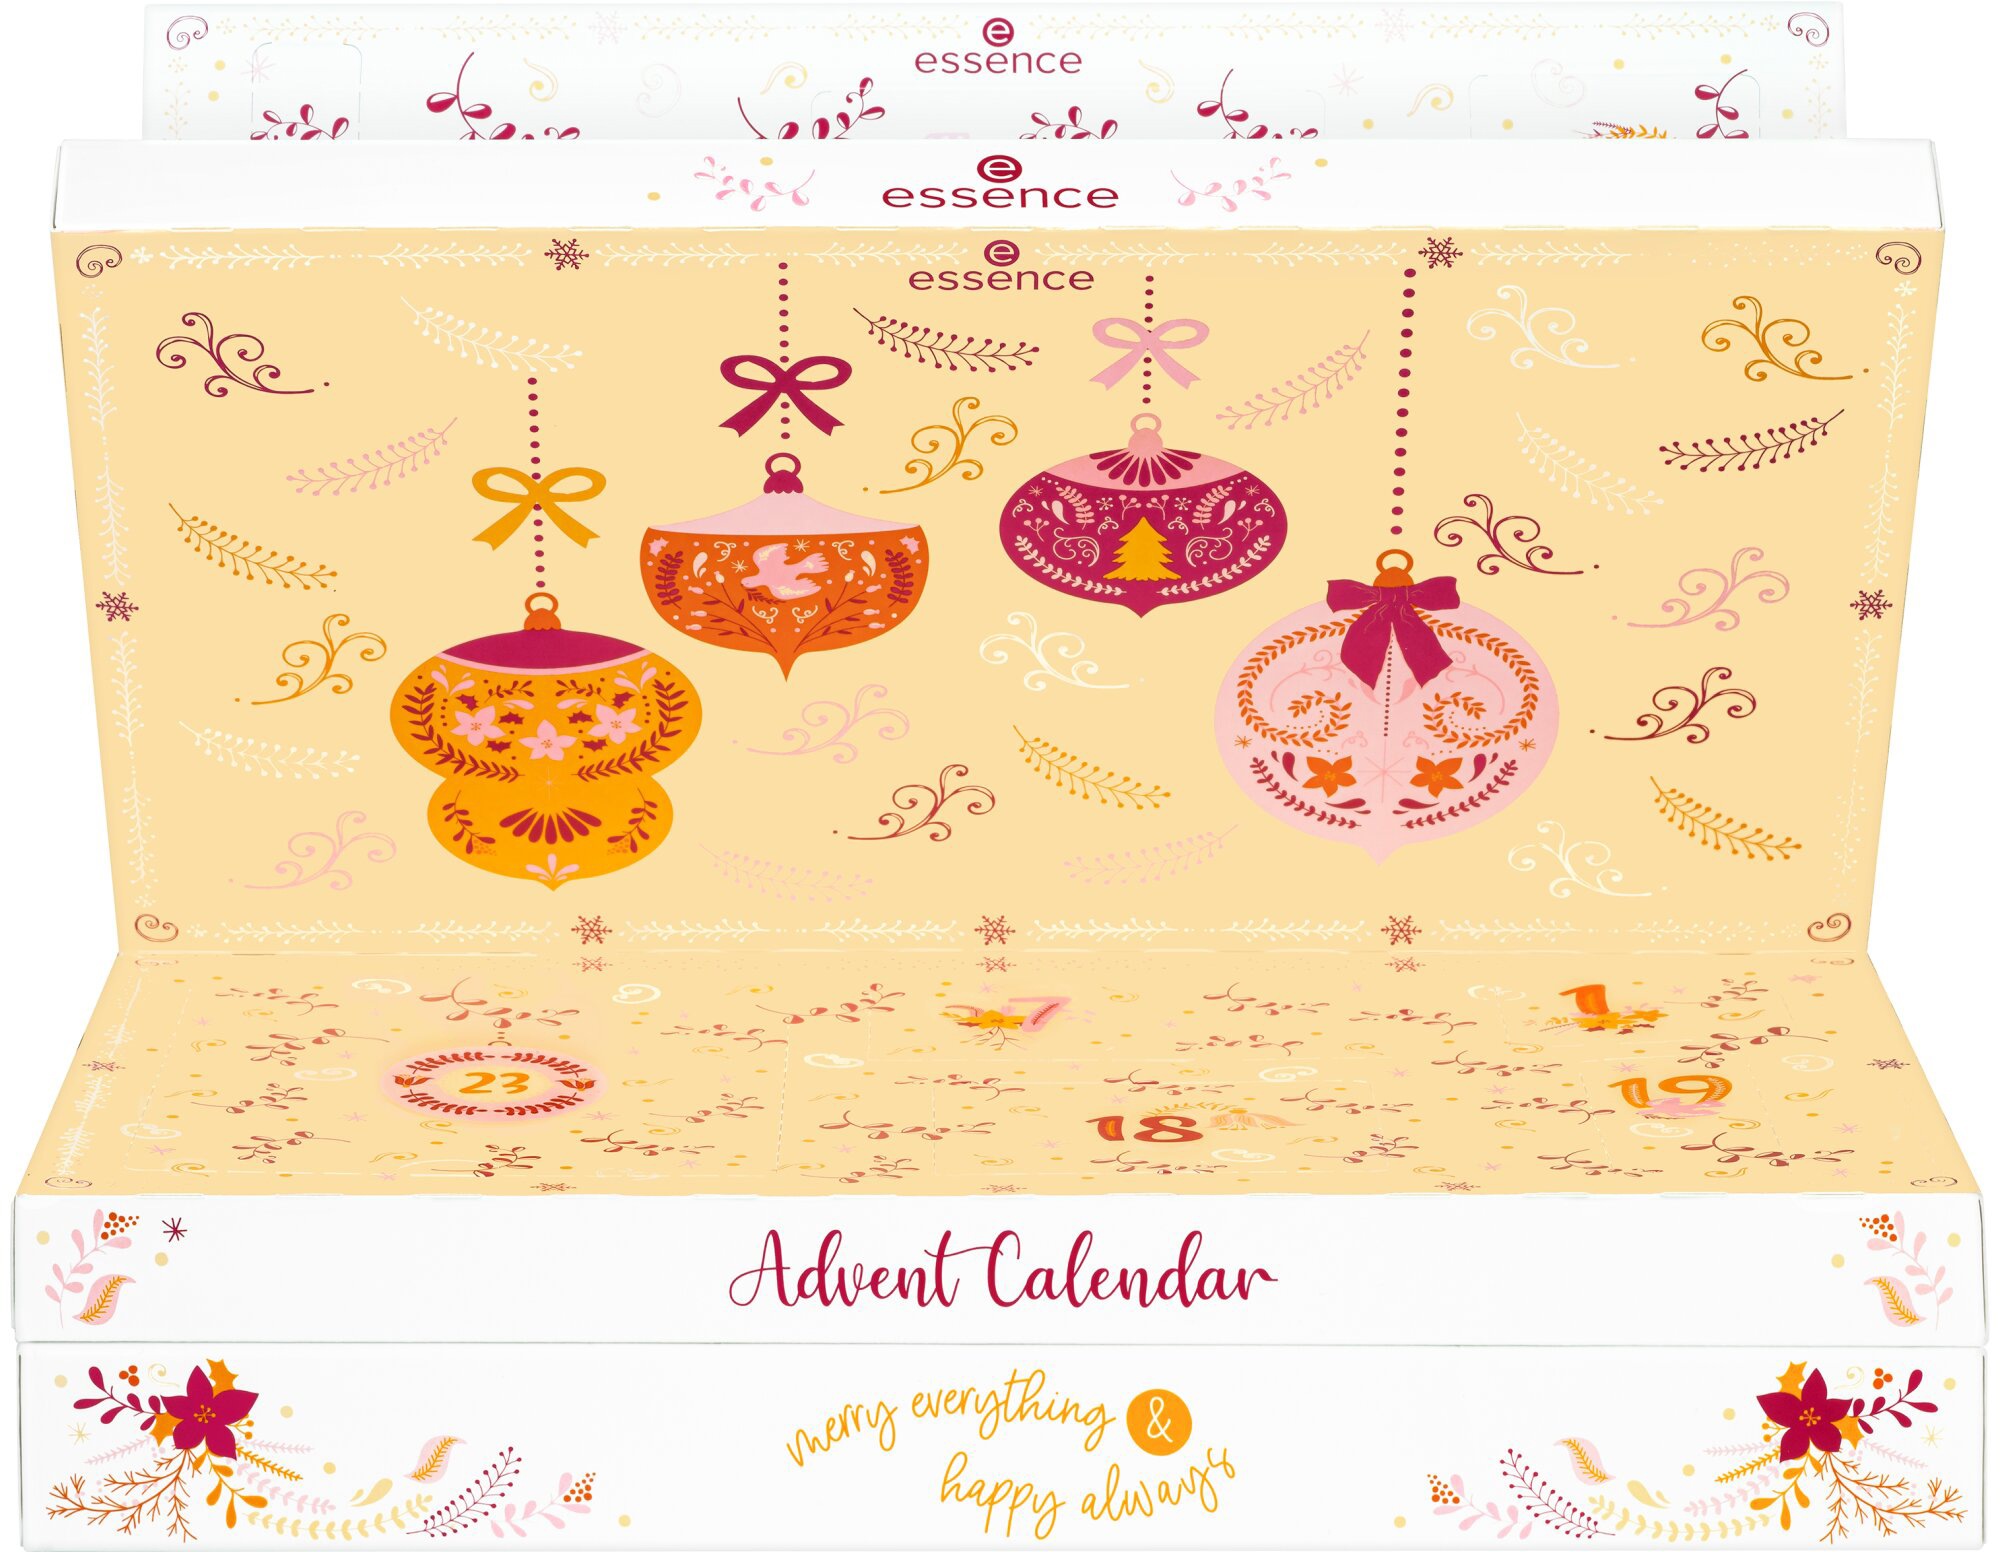 & Jahren bei happy online always«, everything ab merry Calendar Essence 14 »Advent Adventskalender